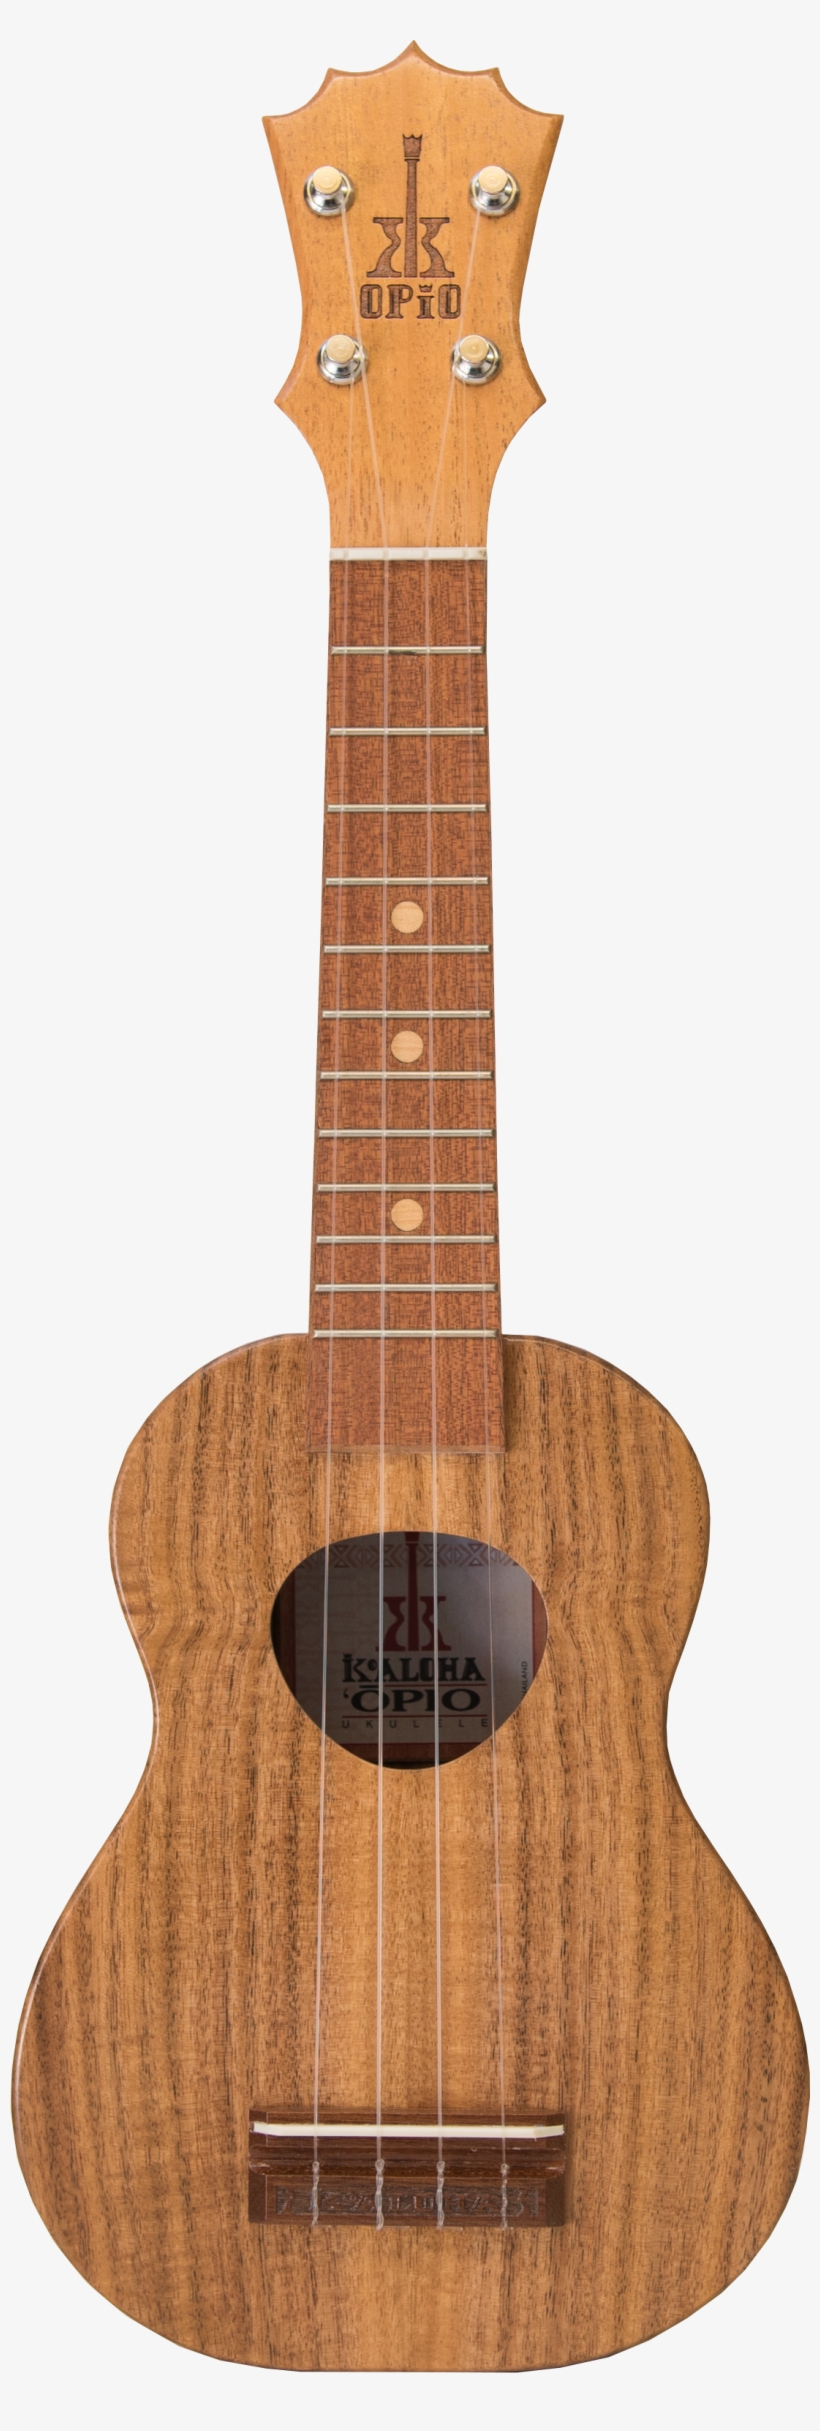 Koaloha Opio Acacia Wood Soprano Ukulele $500 - Acoustic Guitar, transparent png #9632971